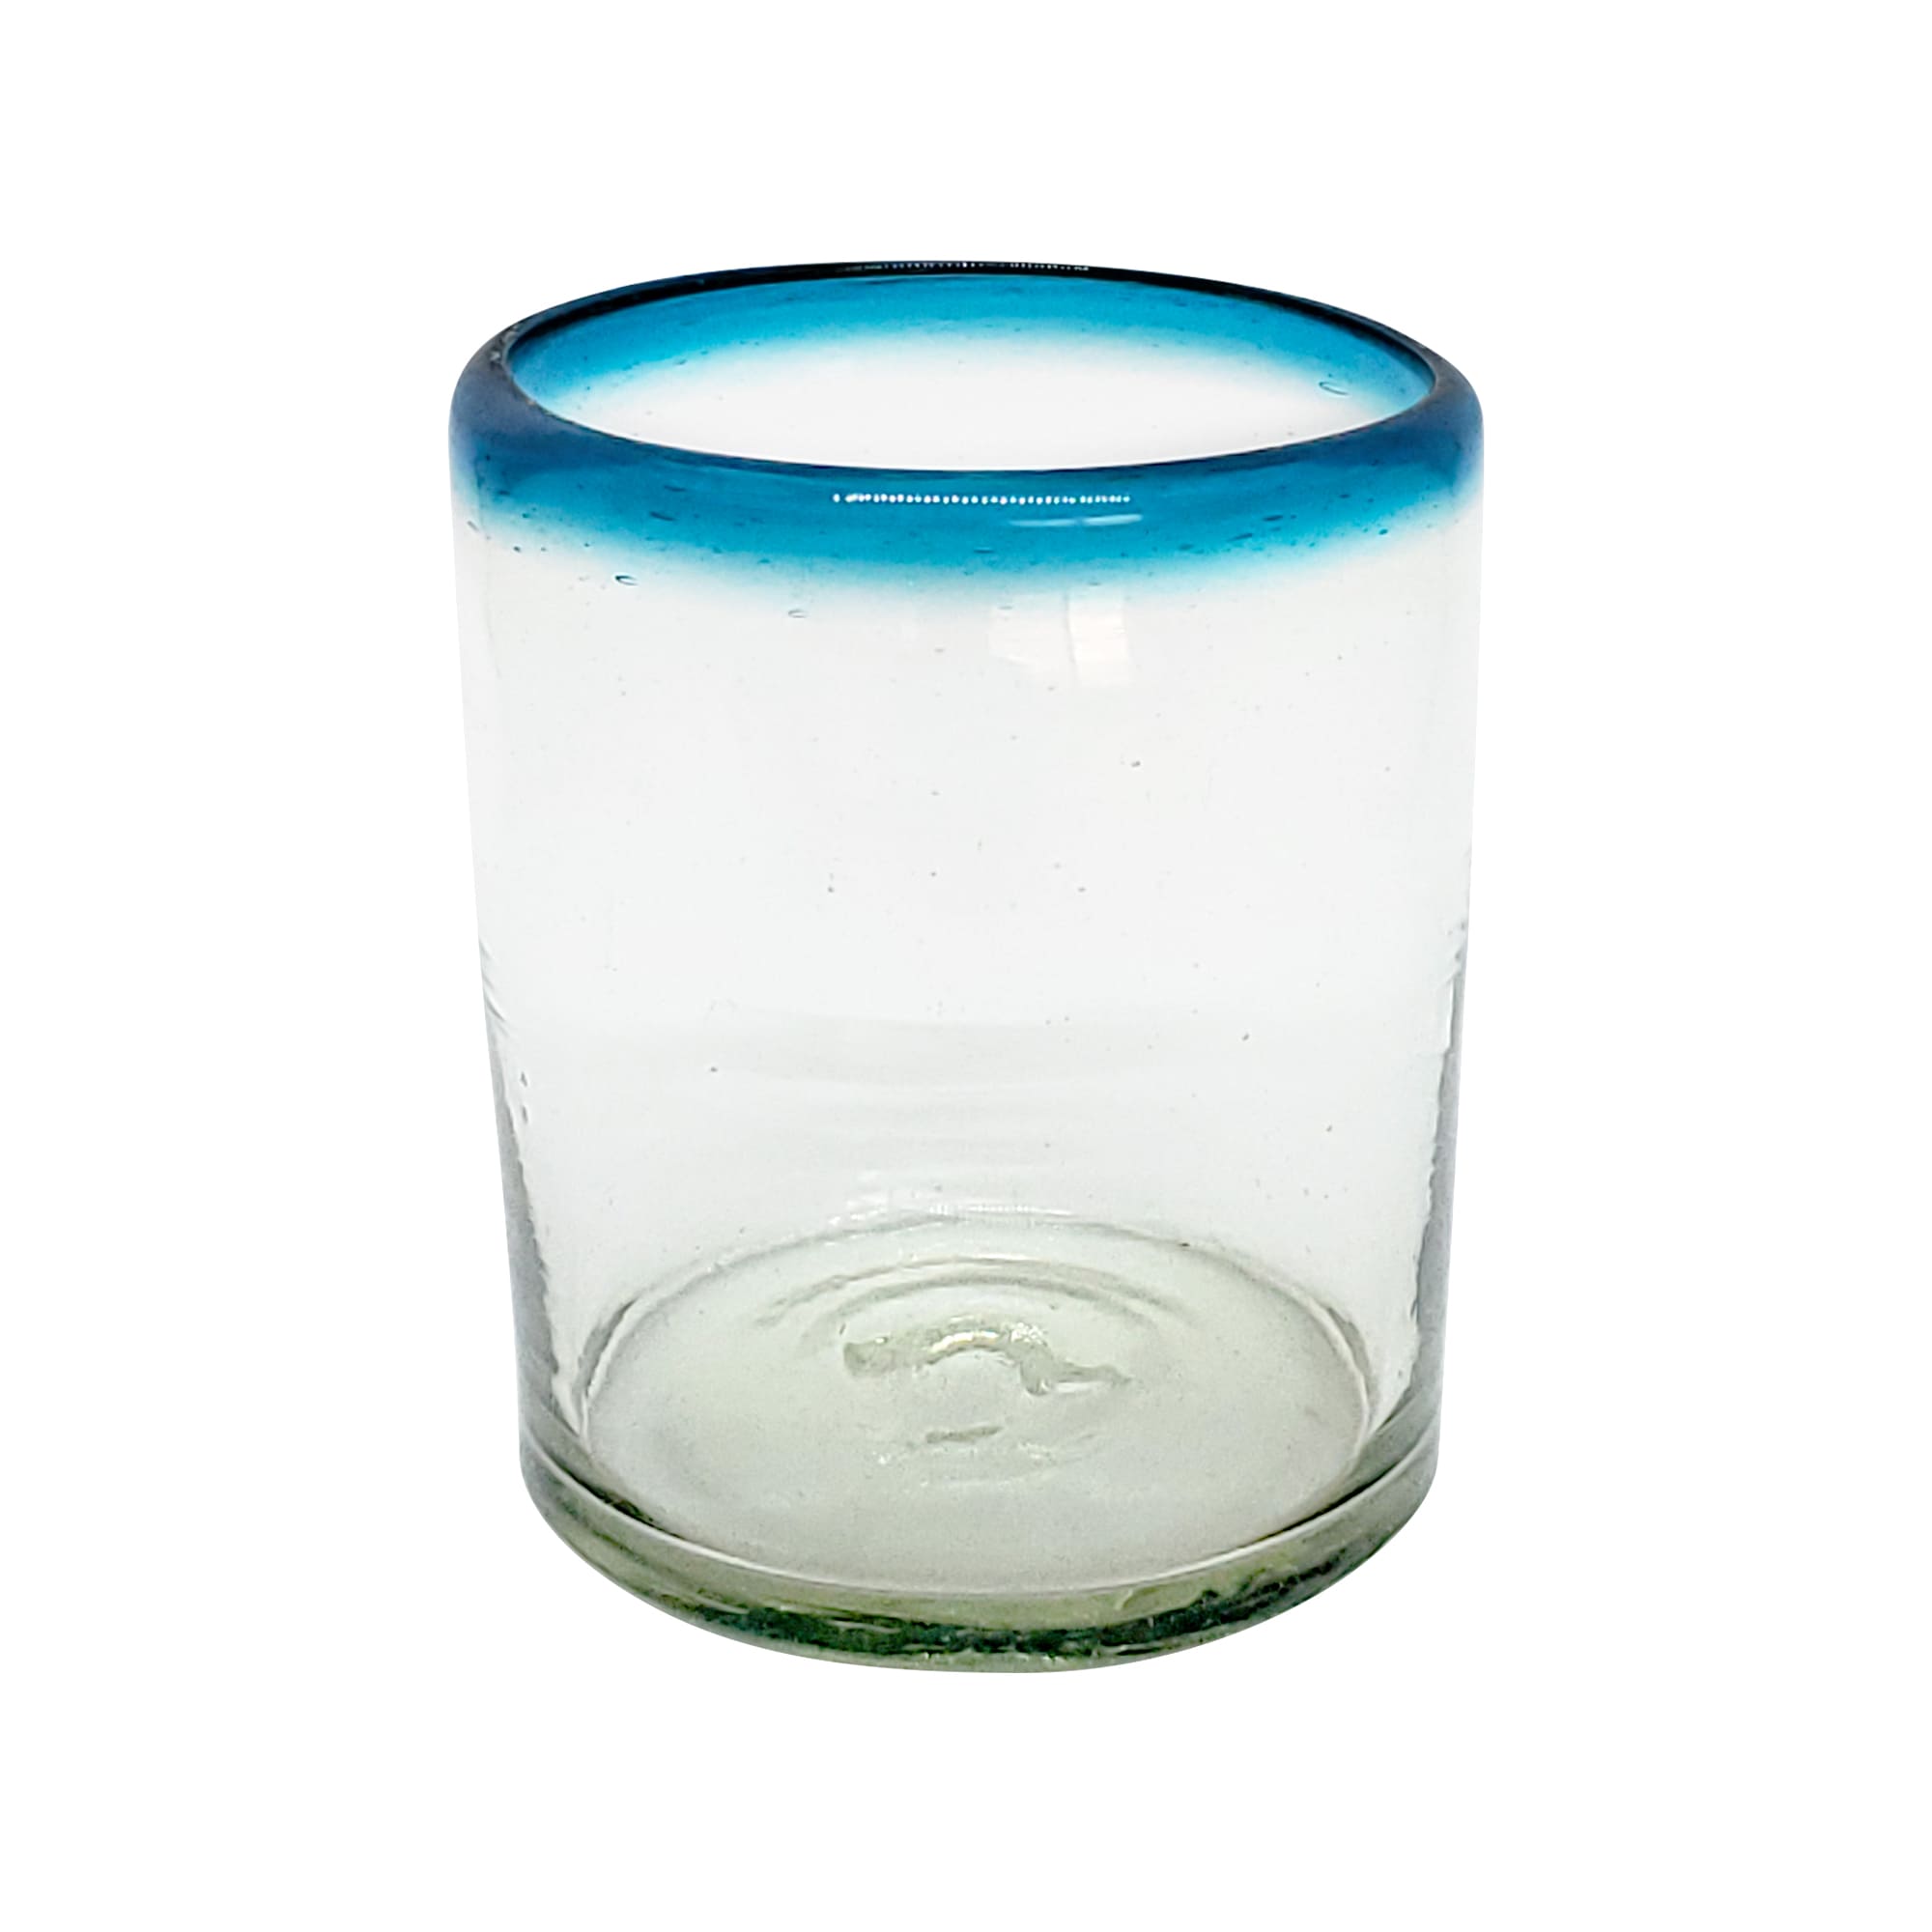 VIDRIO SOPLADO / vasos chicos con borde azul aqua, 10 oz, Vidrio Reciclado, Libre de Plomo y Toxinas